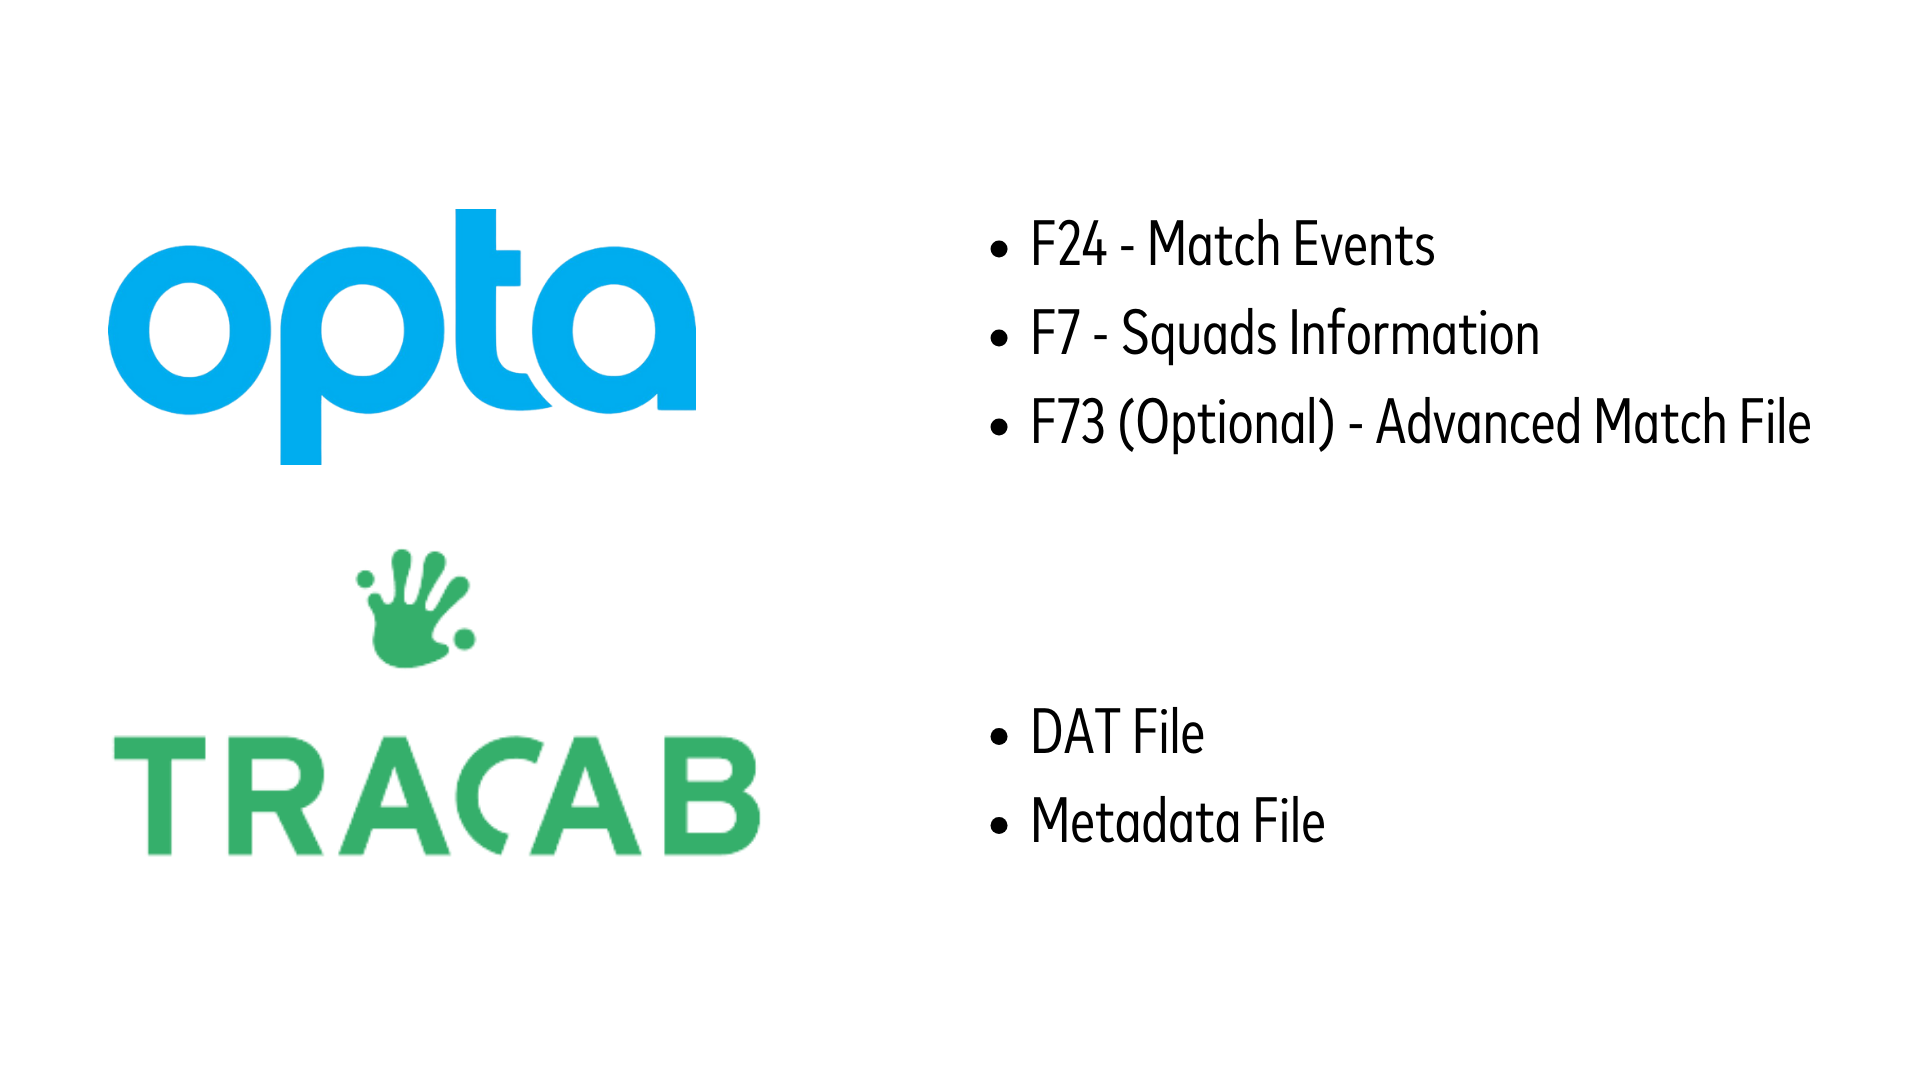 無地の背景に Opta と TracAb のロゴ。Opta は青い文字で急降下する円形の要素とともに表示され、その下の TracAb は緑色で手形のシンボルとともに表示され、スポーツ分析用の総合競技および位置データの提供における両社のパートナーシップを示しています。